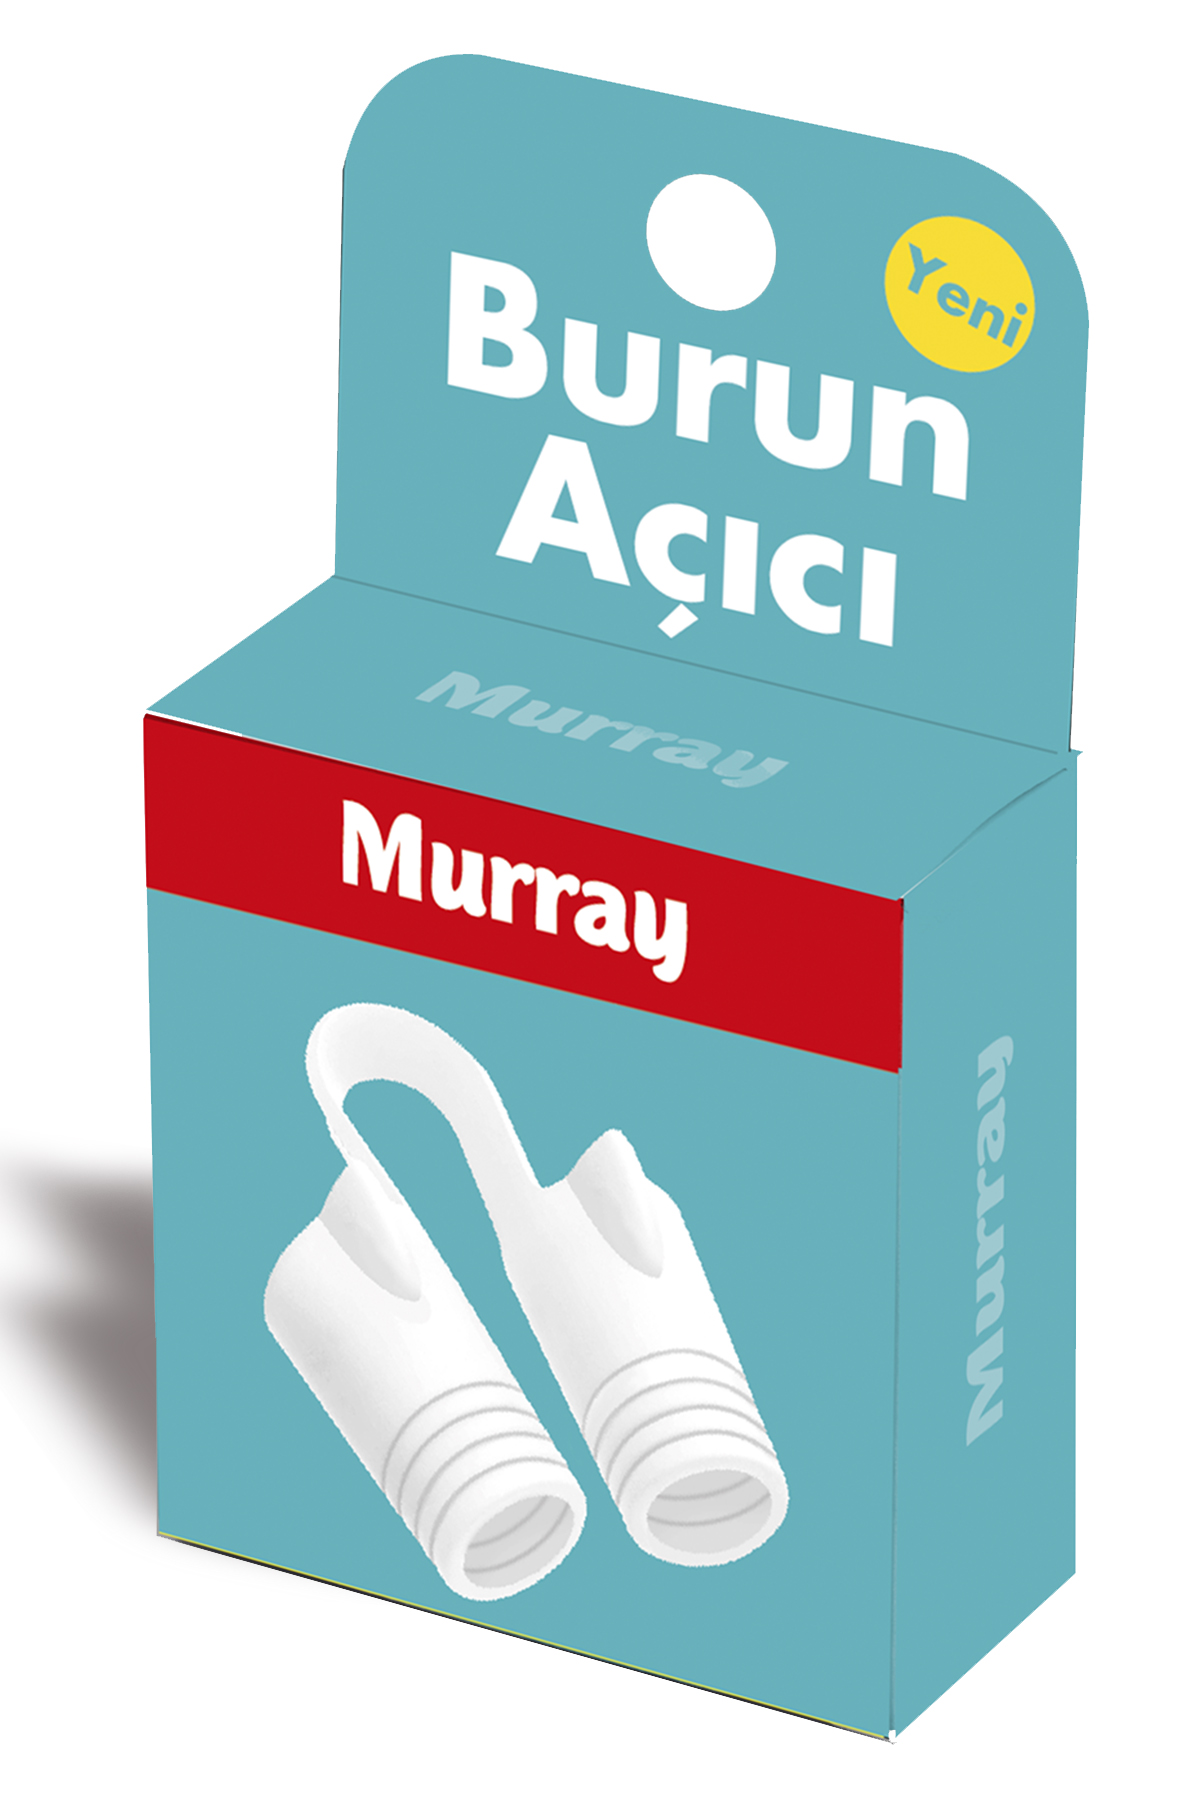 Murray Burun Açıcı Aparat - Horlama Önlemeye Yardımcı Orta Boy 3'lü Kutu